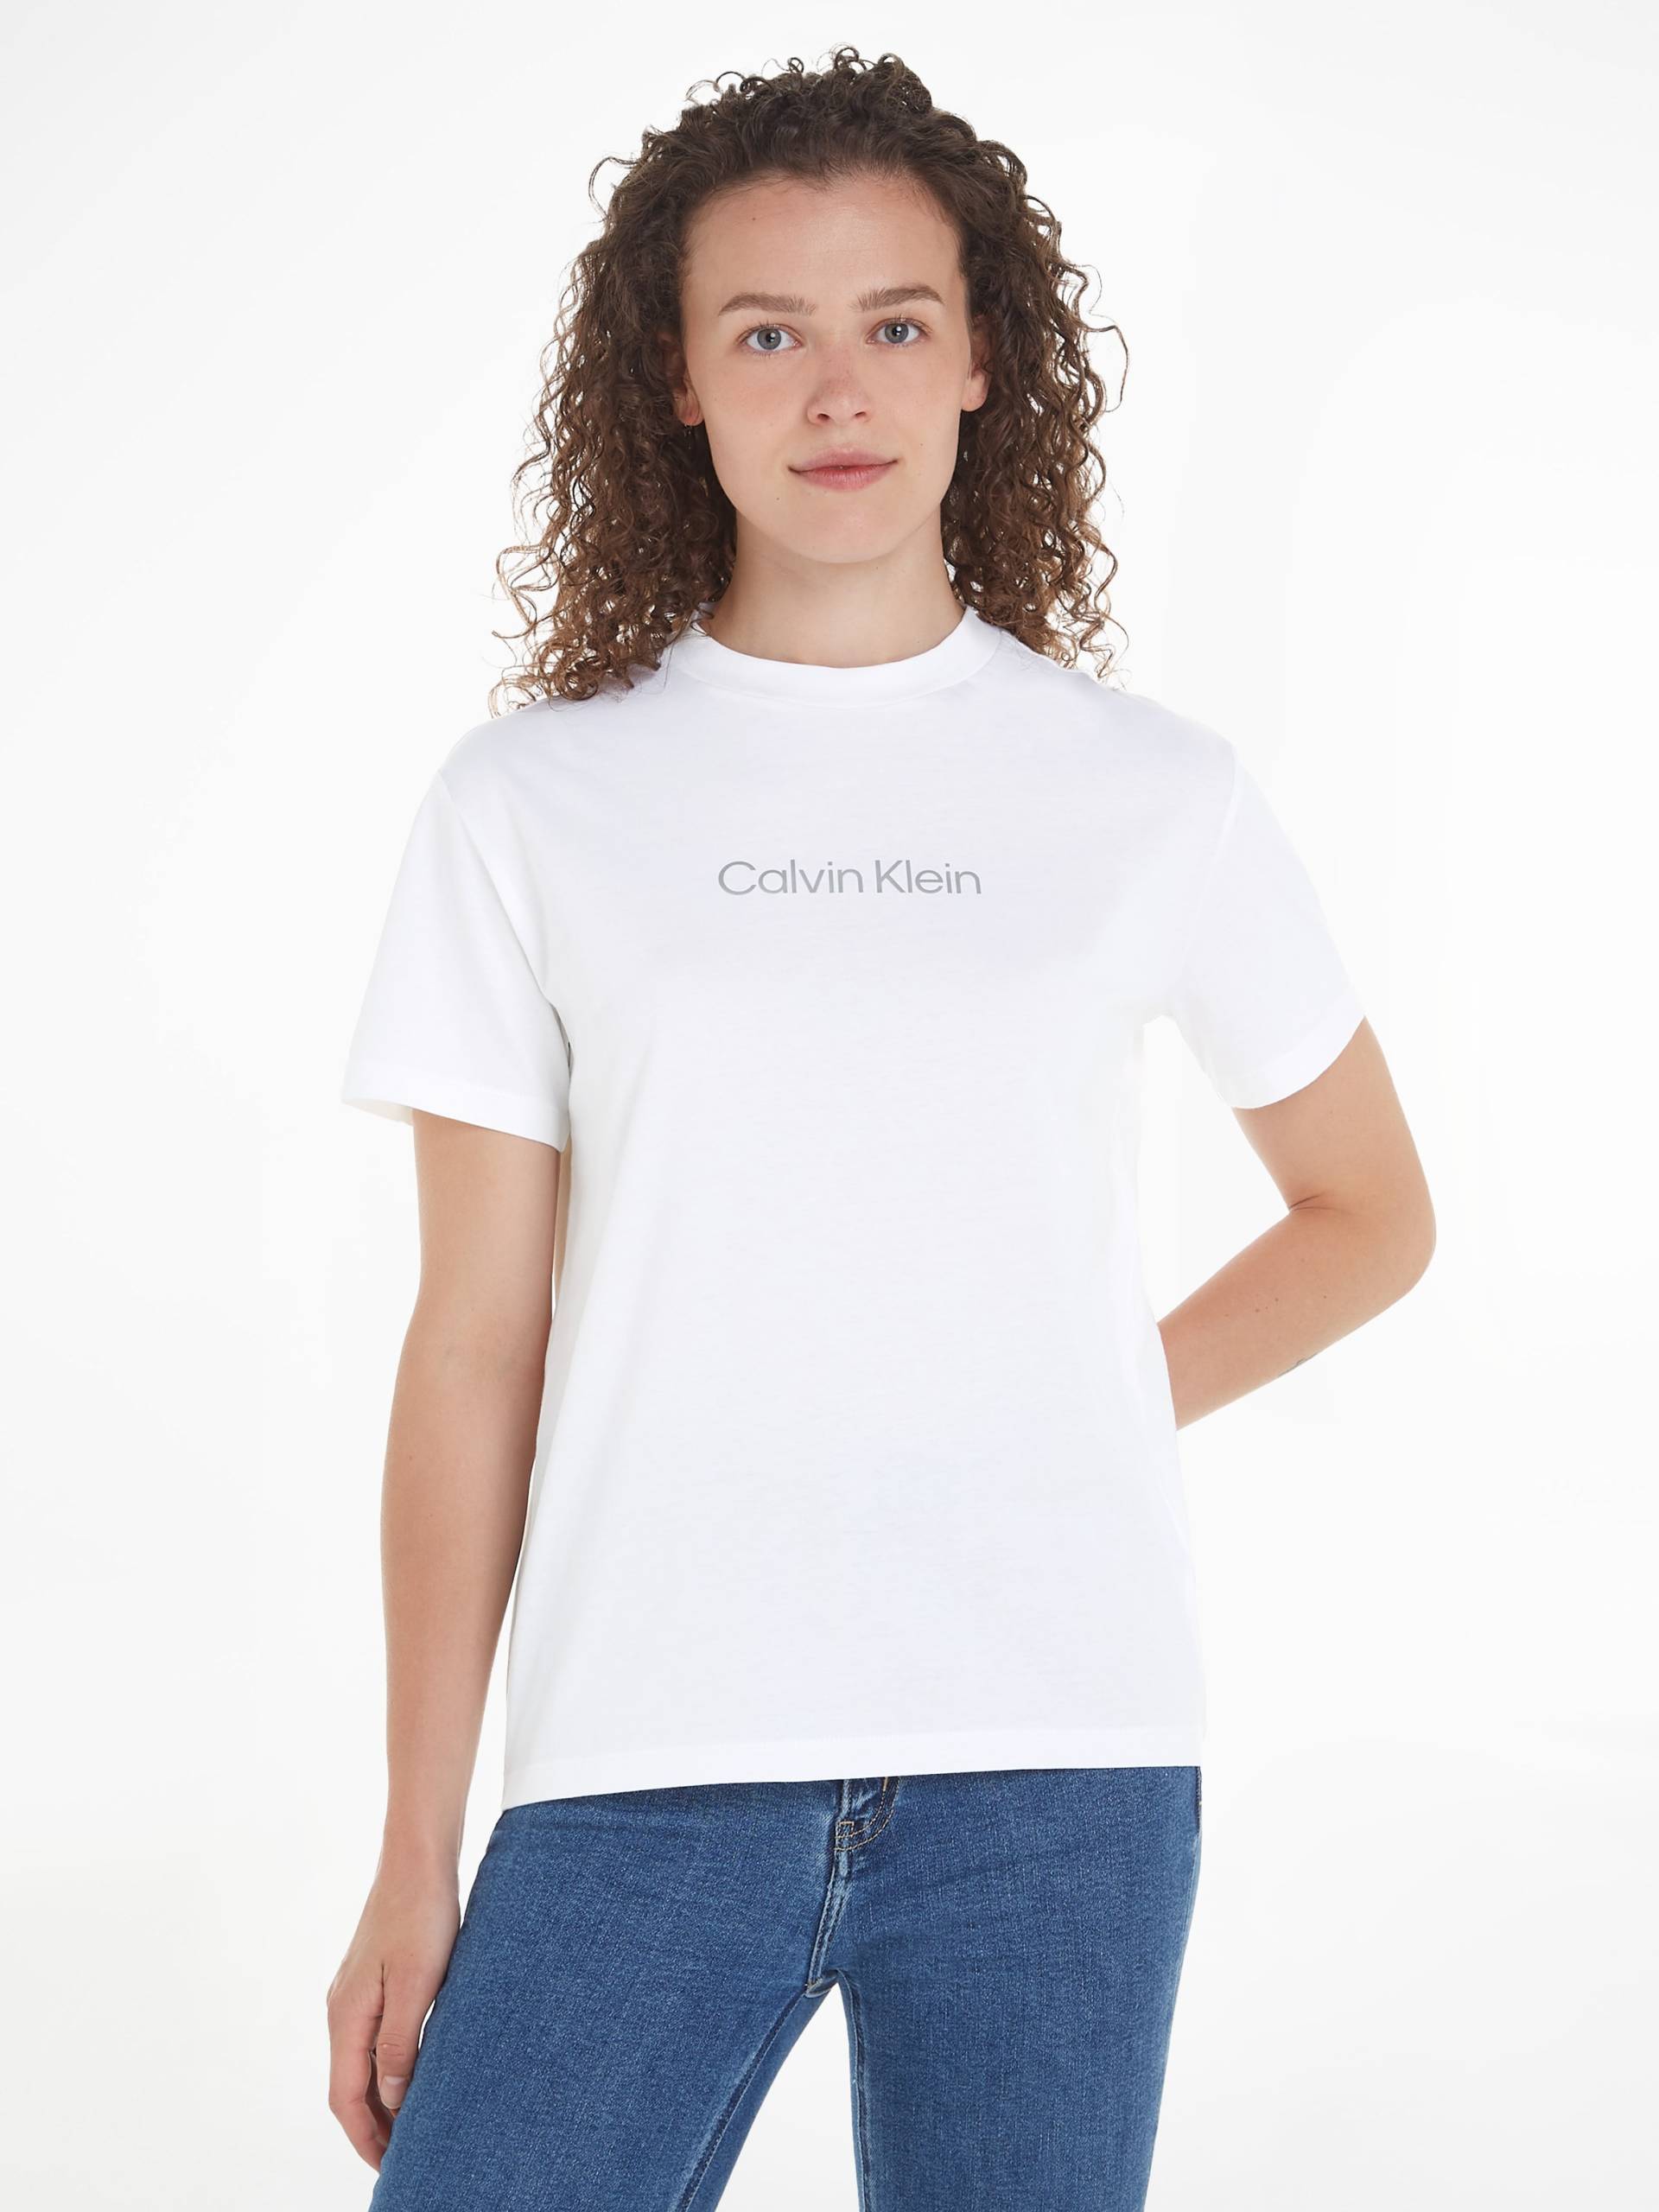 Calvin Klein T-Shirt »HERO METALLIC LOGO T-SHIRT« von Calvin Klein